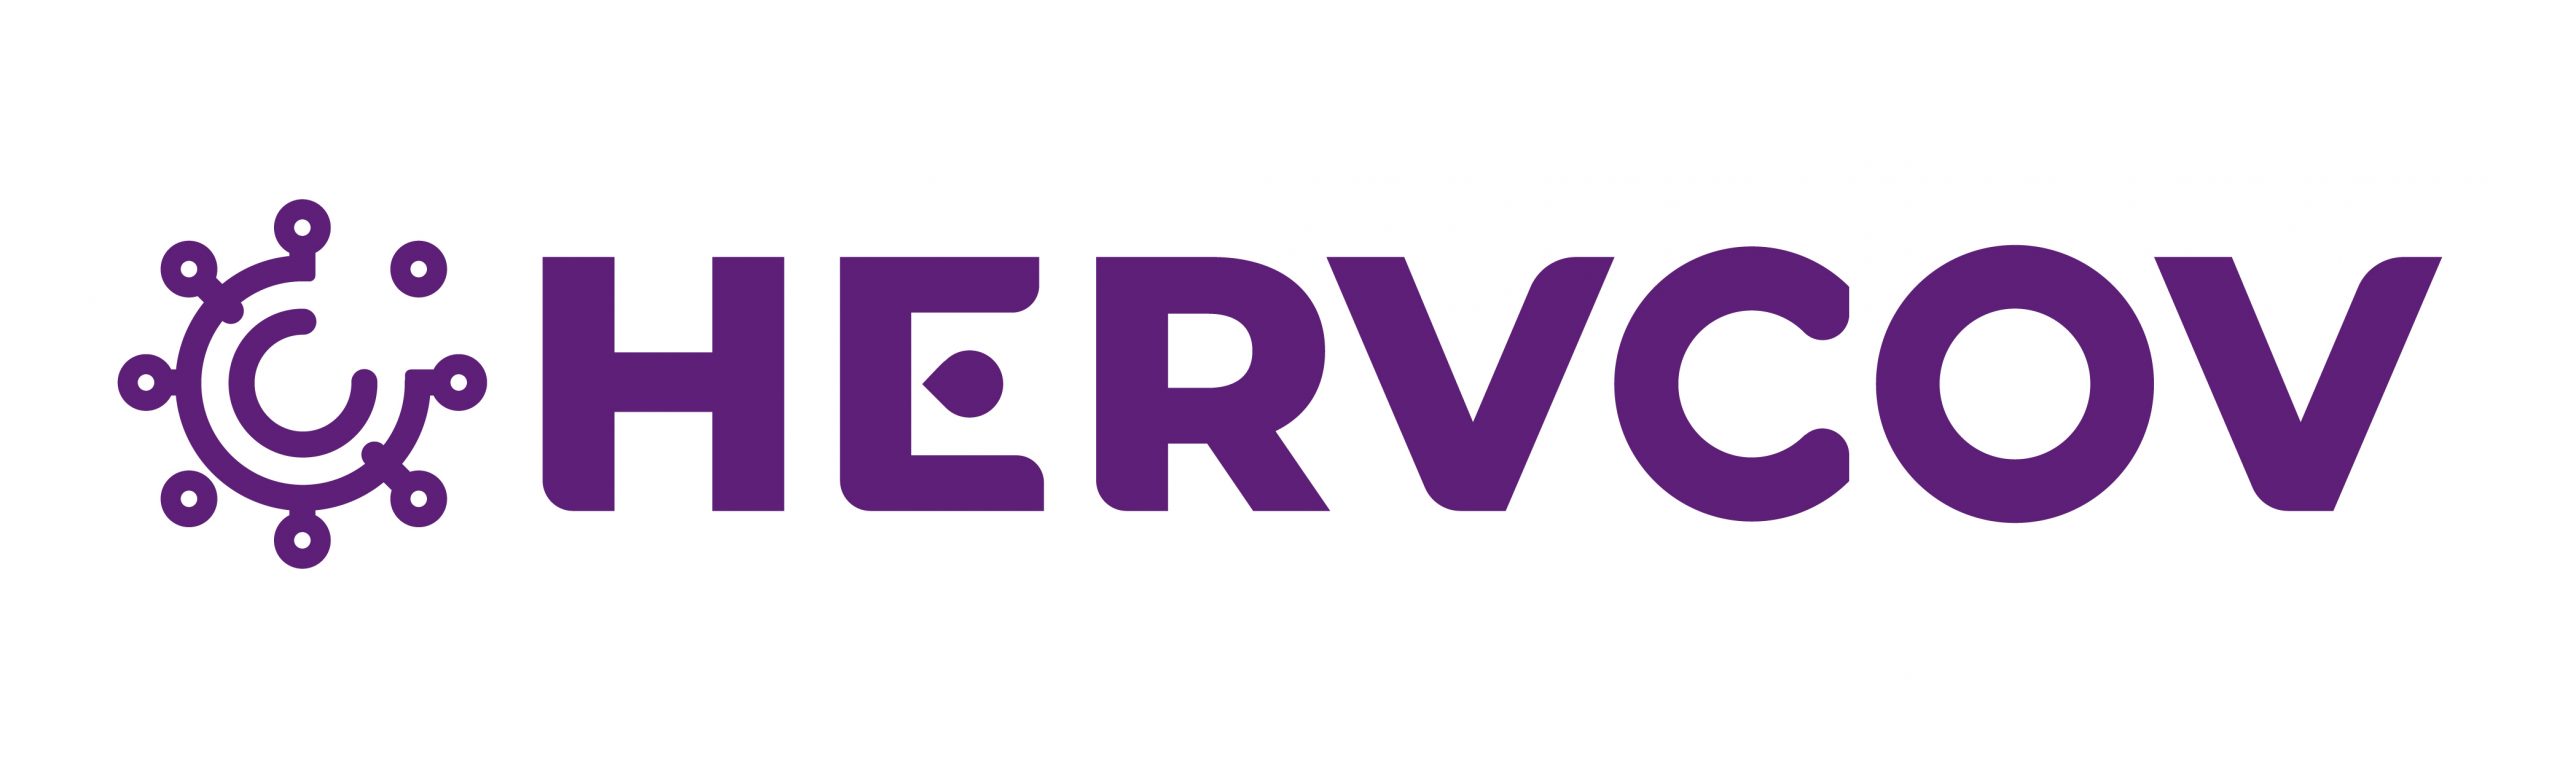 Logotipo Hervcov